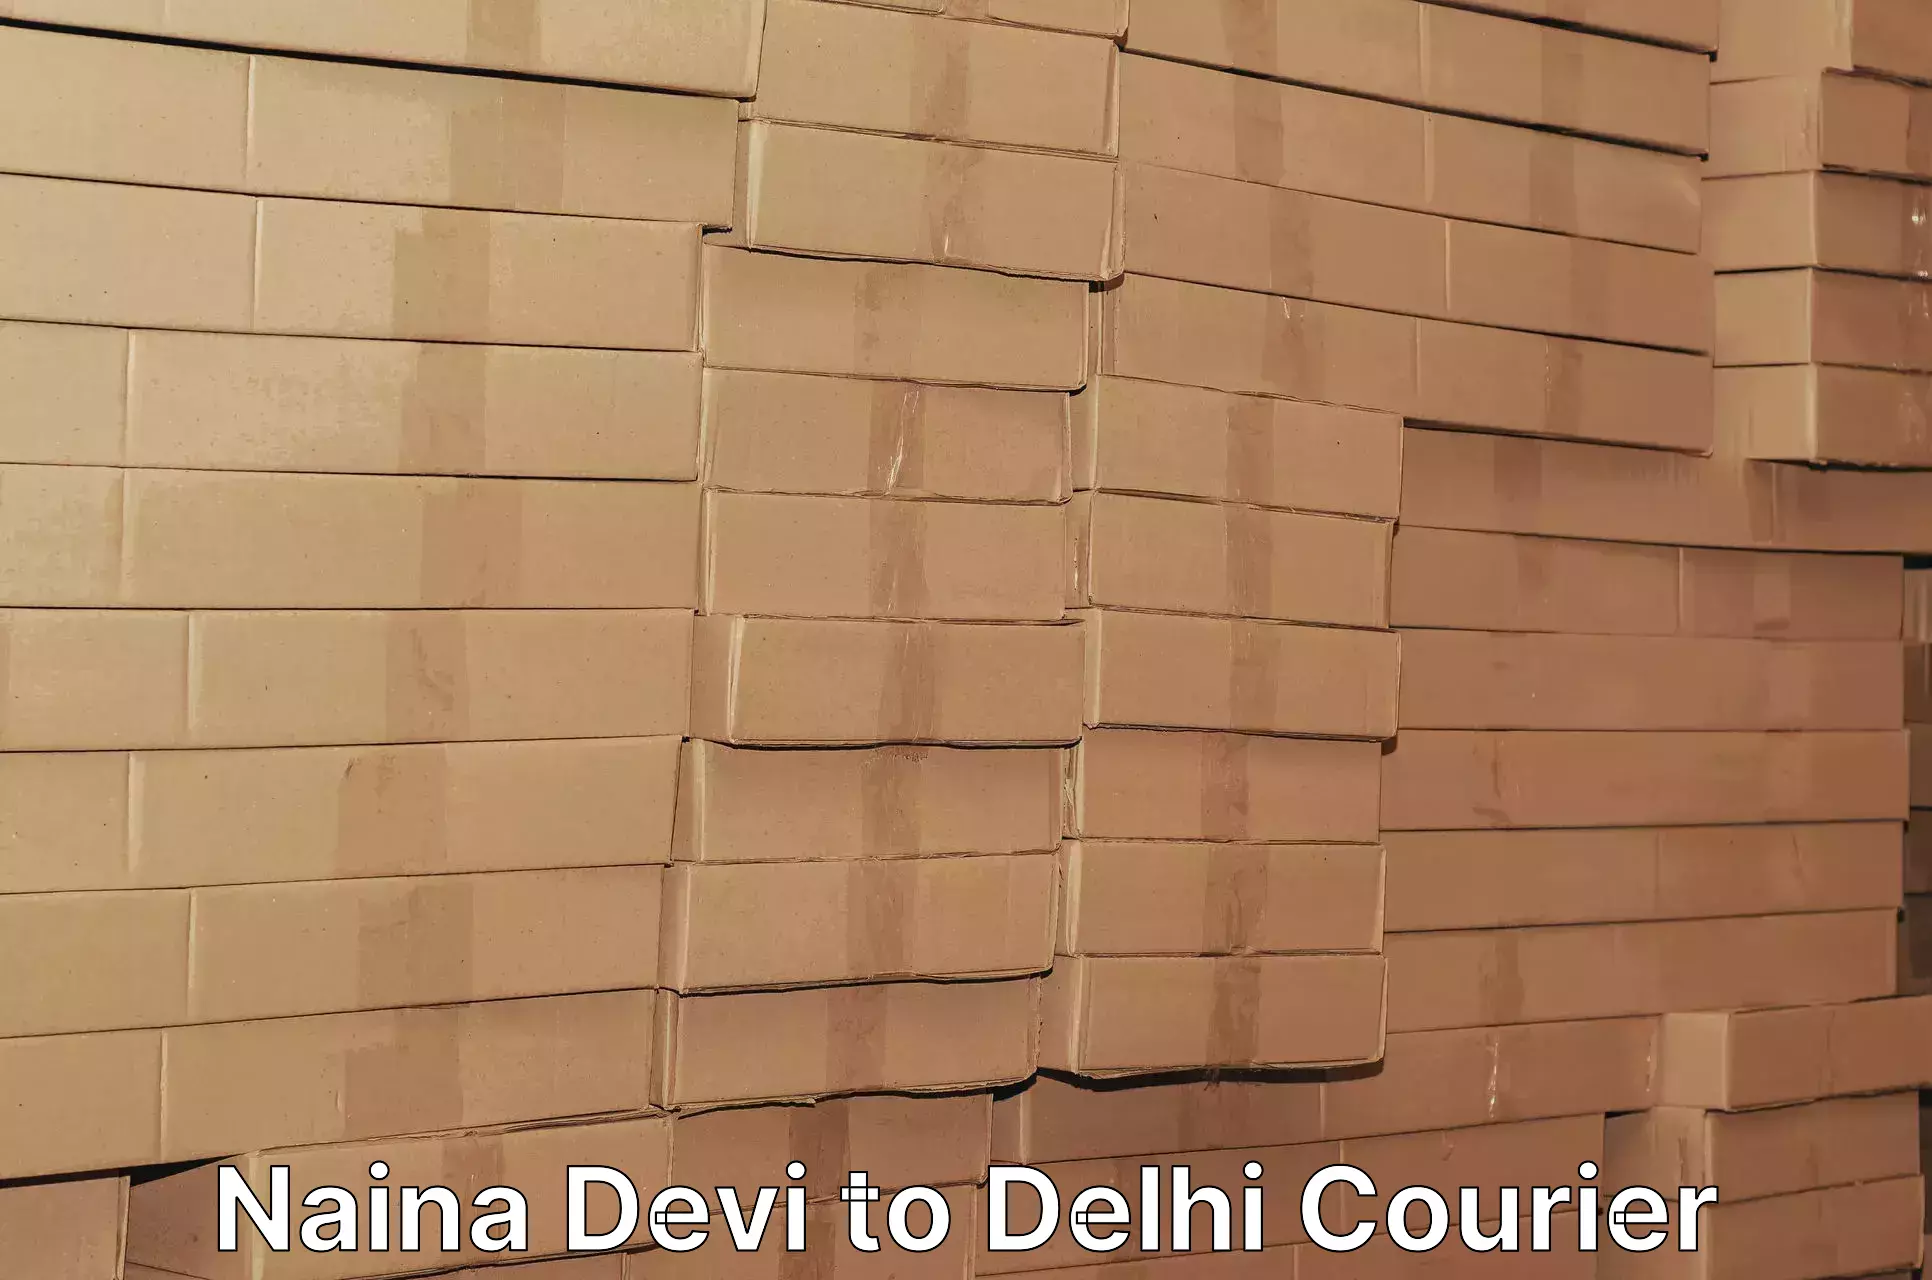 Professional parcel services in Naina Devi to Delhi